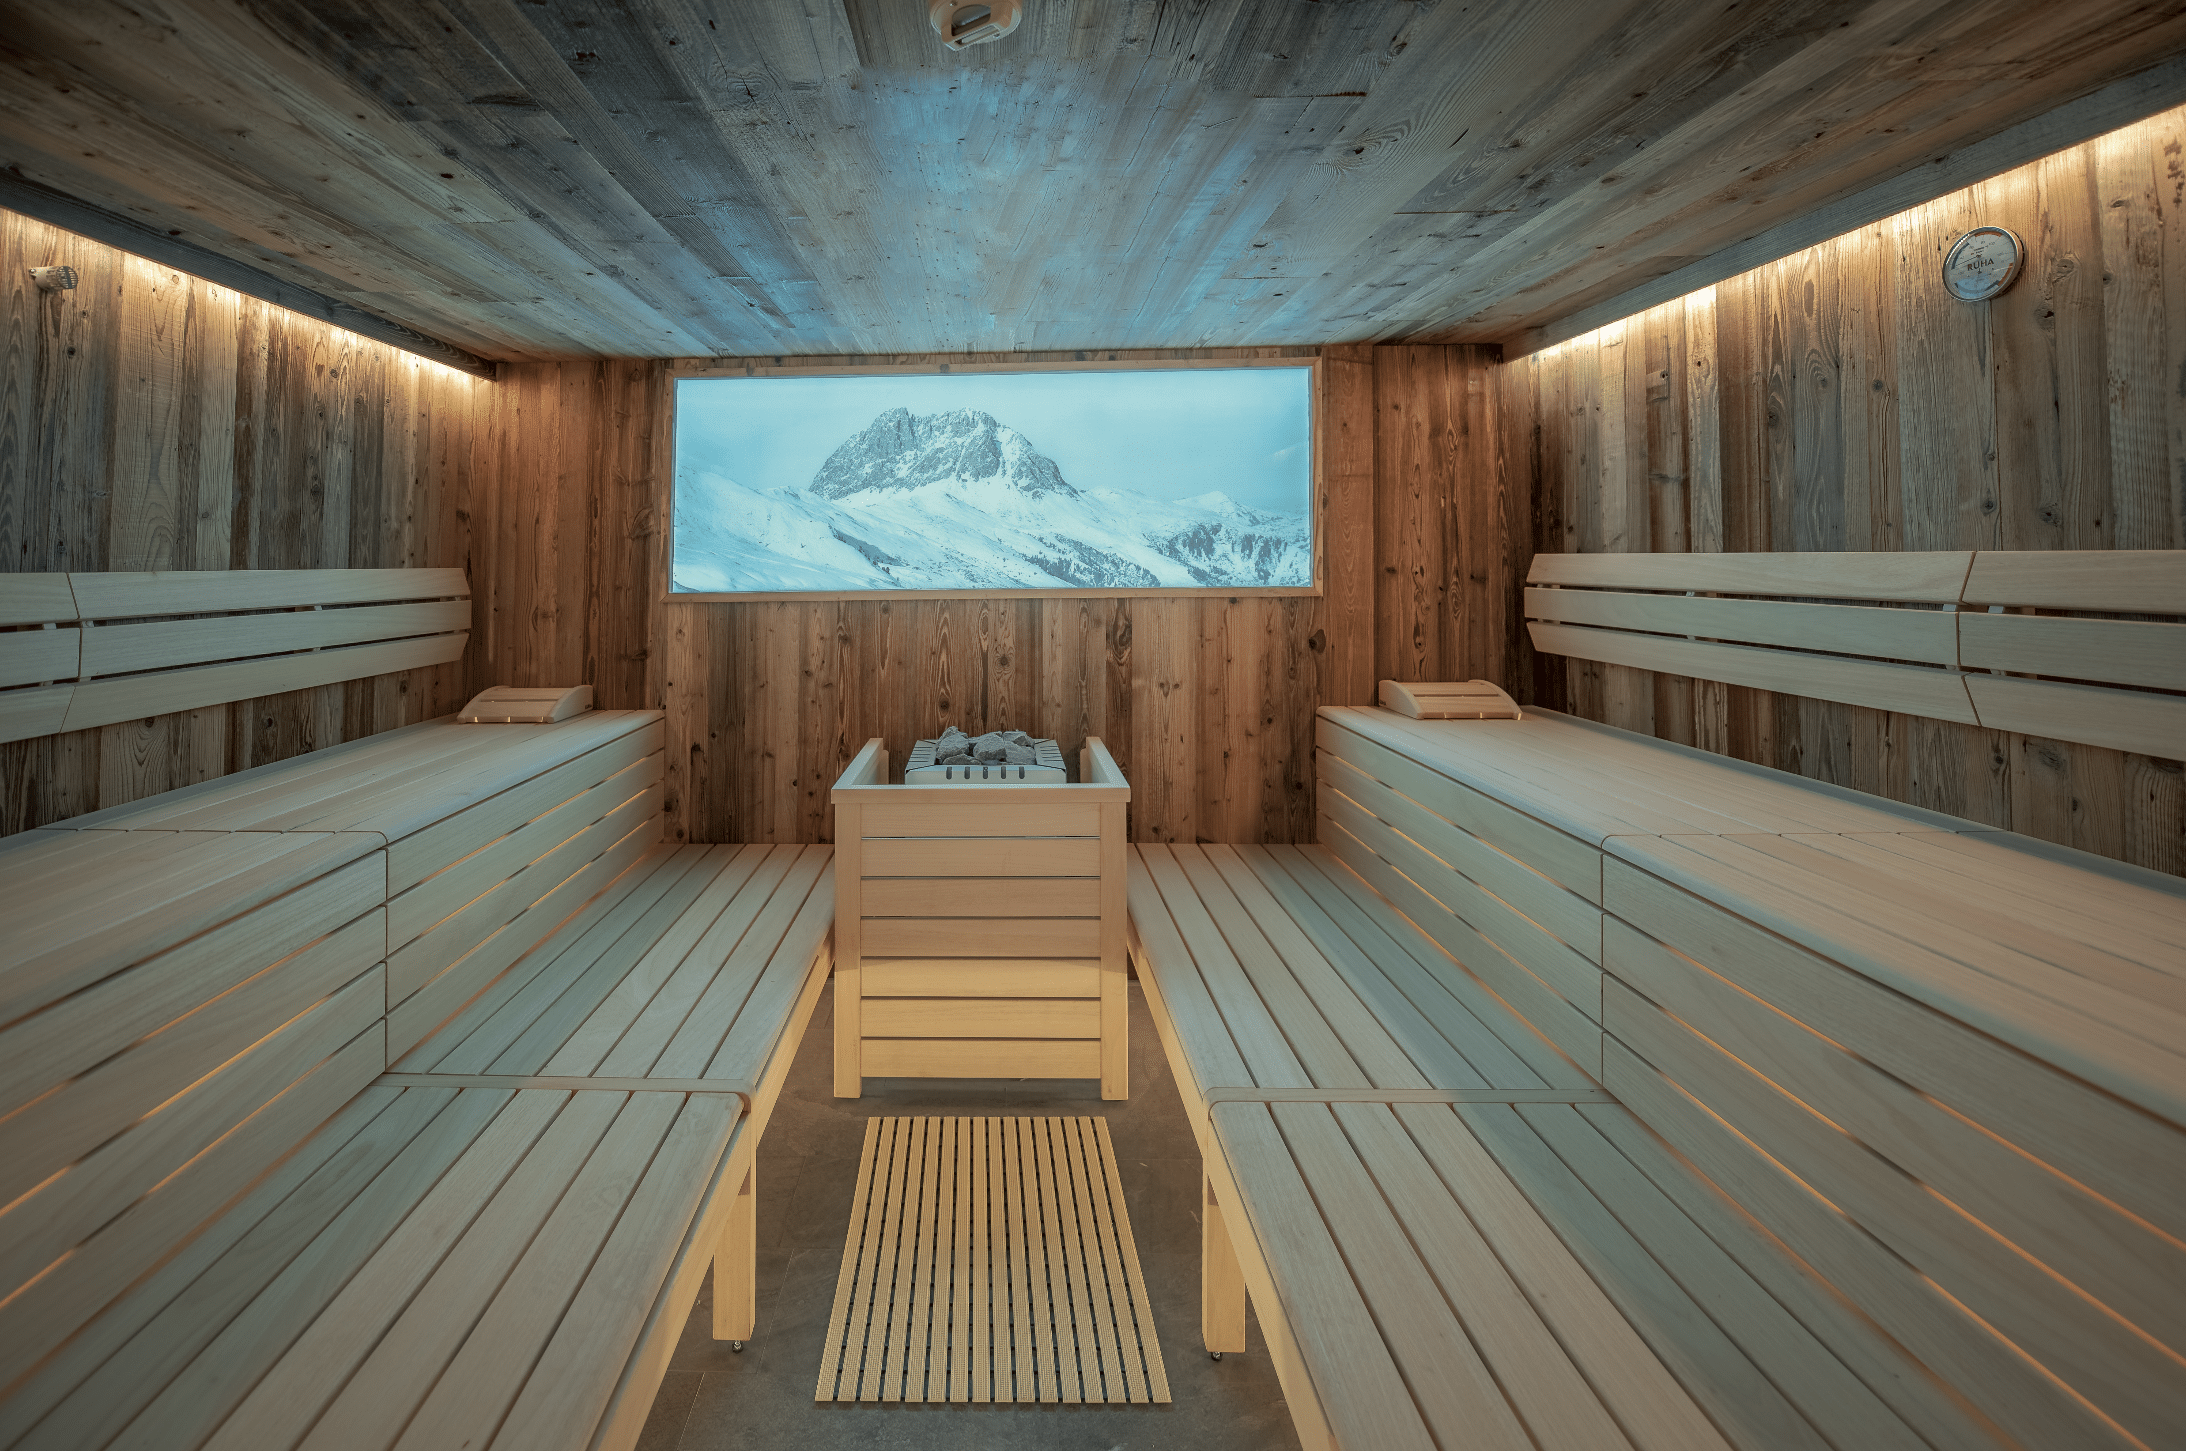 RUHA präsentiert eine Sauna aus Holz von innen, mit dem Aufgussblock vor einem Fenster mit Blick in die Berge.